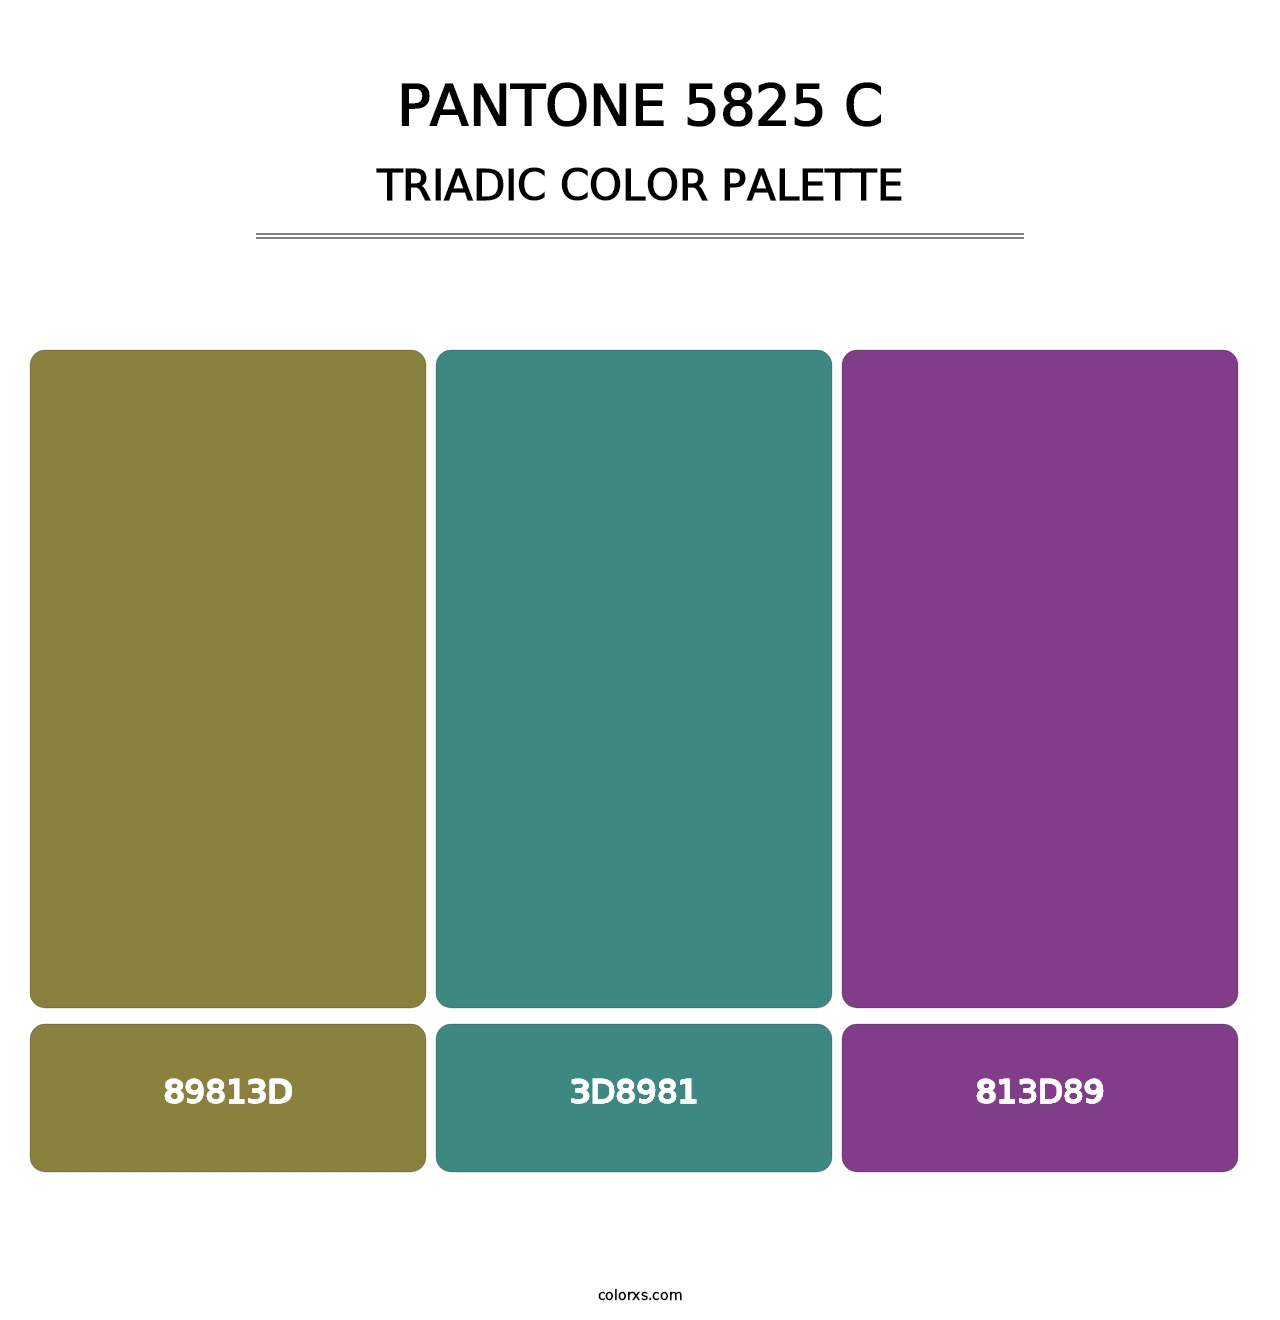 PANTONE 5825 C - Triadic Color Palette